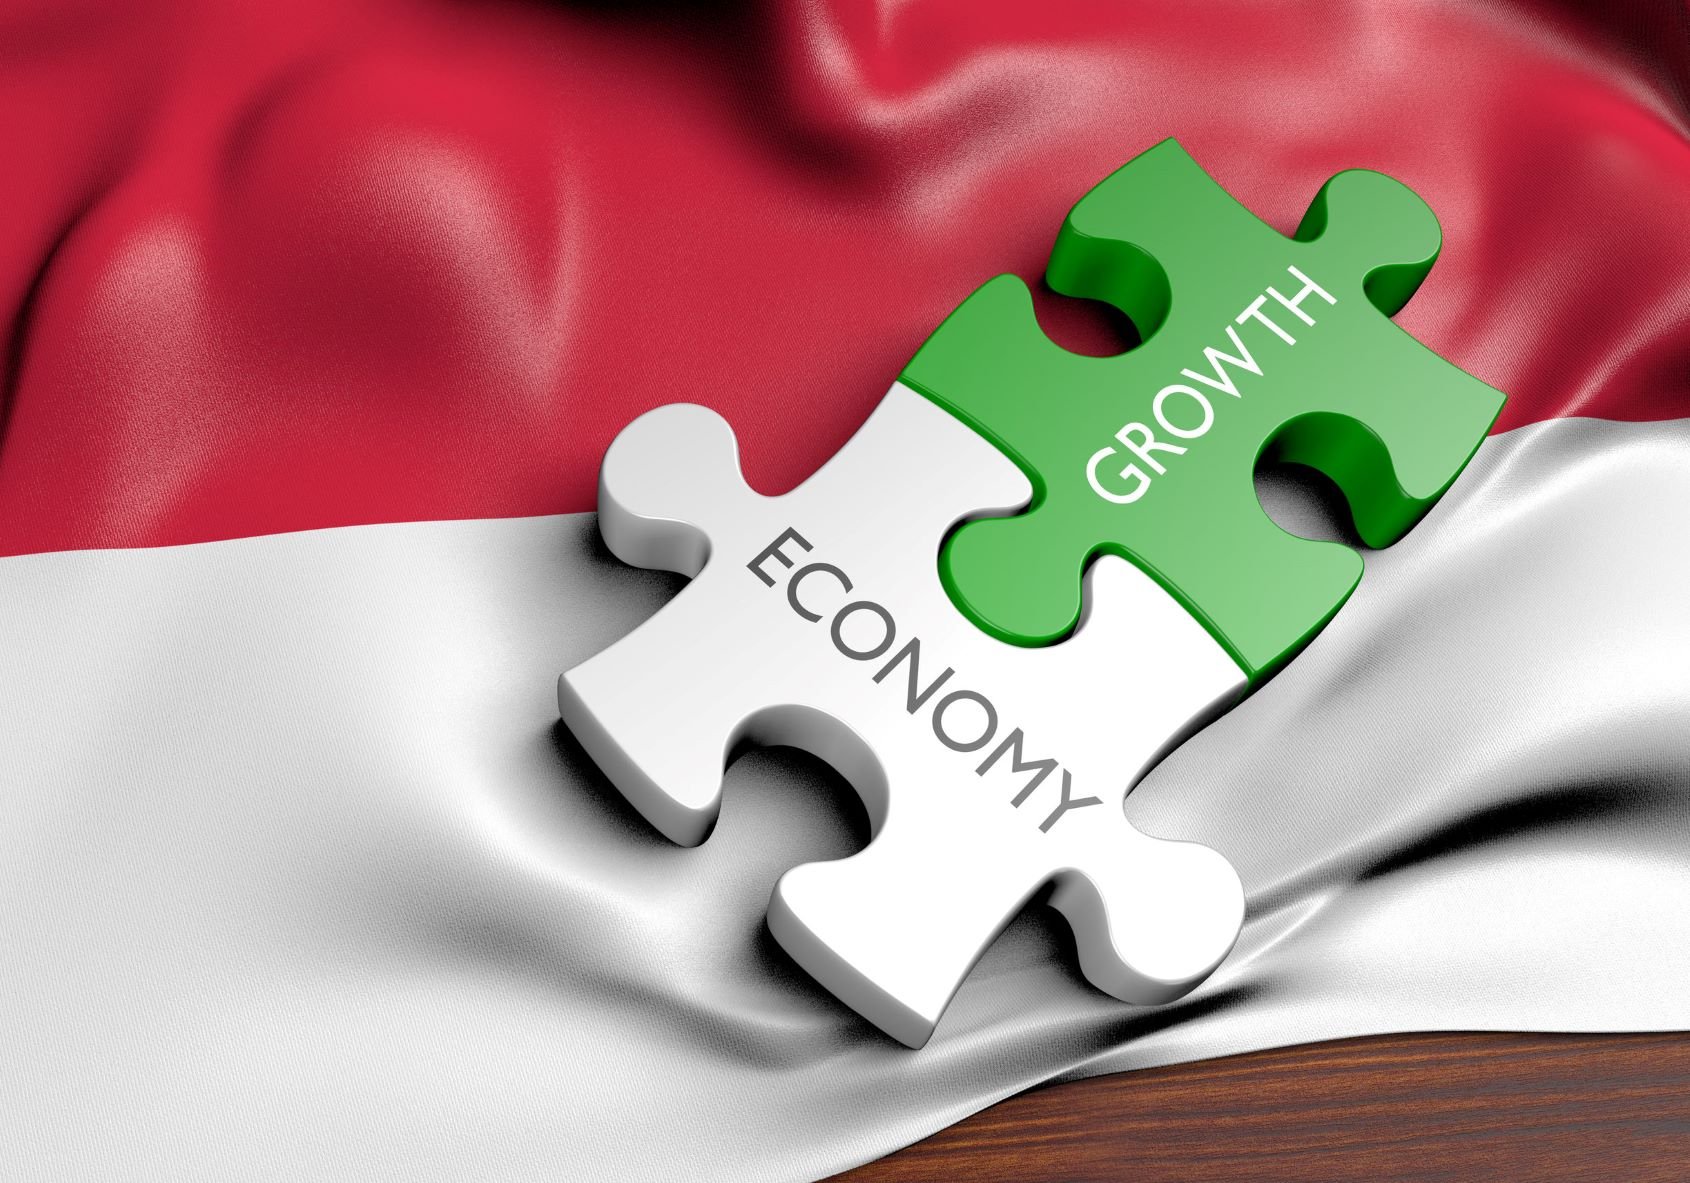 pertumbuhan ekonomi 2019, data pertumbuhan ekonomi Indonesia, perang dagang amerika china, dampak perang dagang, data pertumbuhan ekonomi diragukan, bps, capital economics